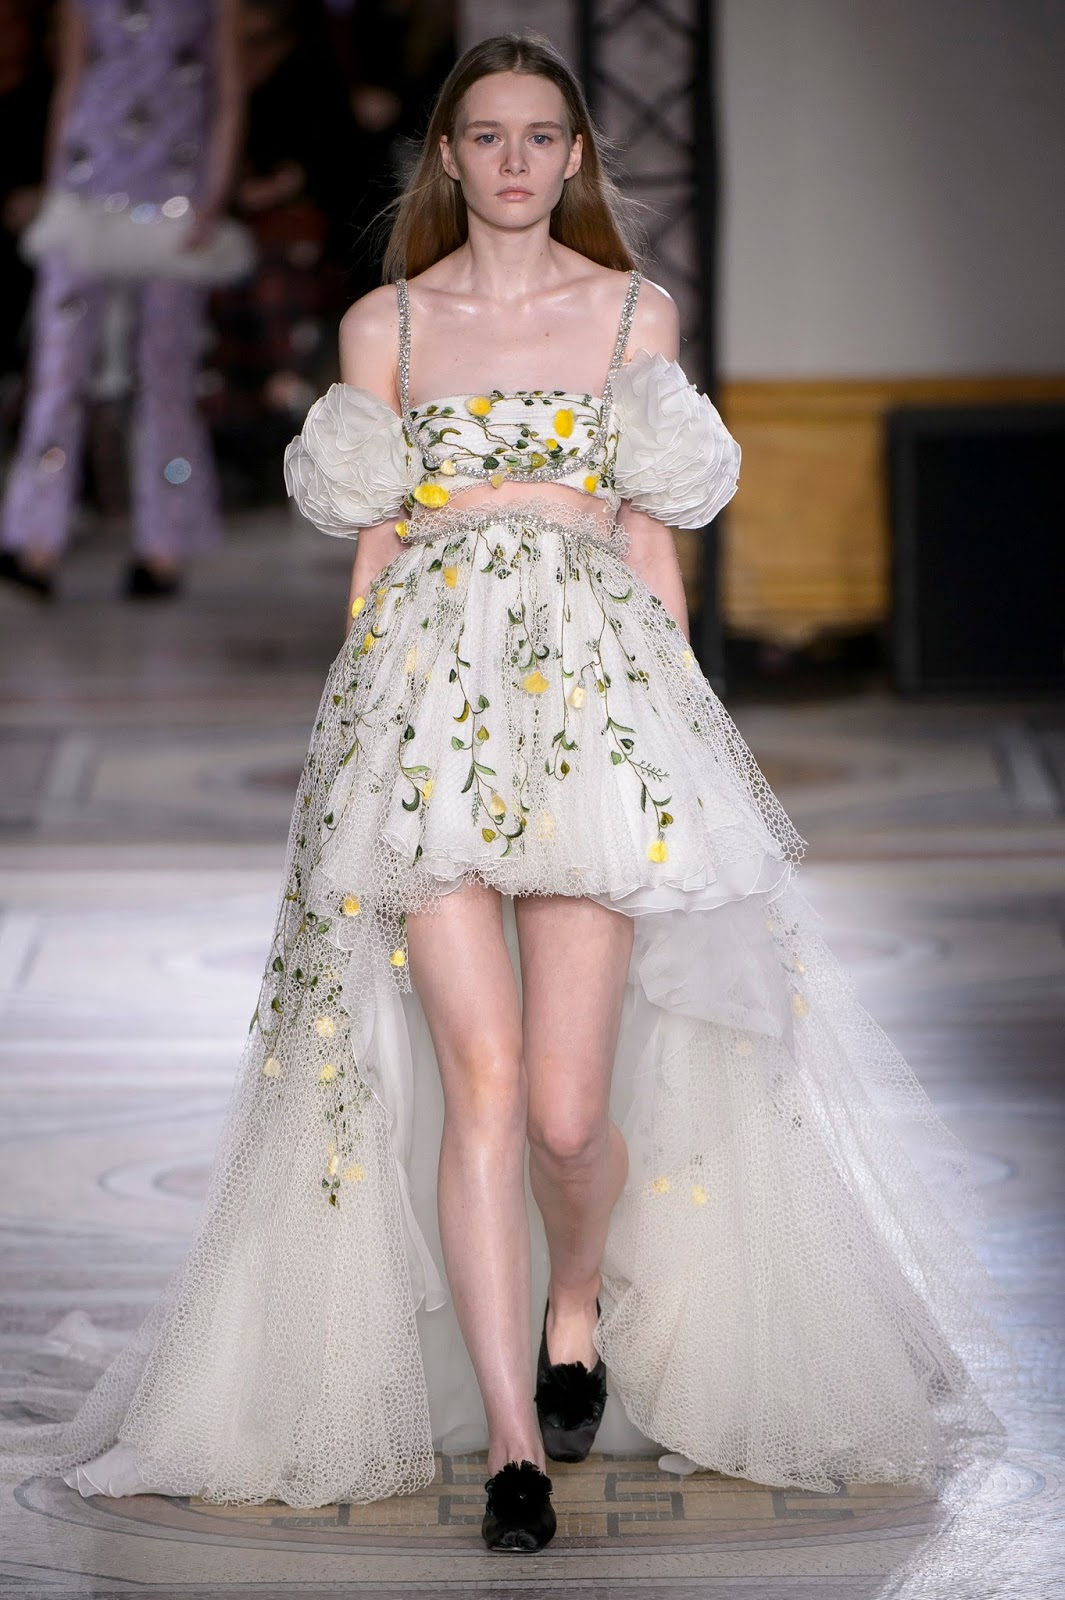 Couture Gorgeous: Giambattista Valli